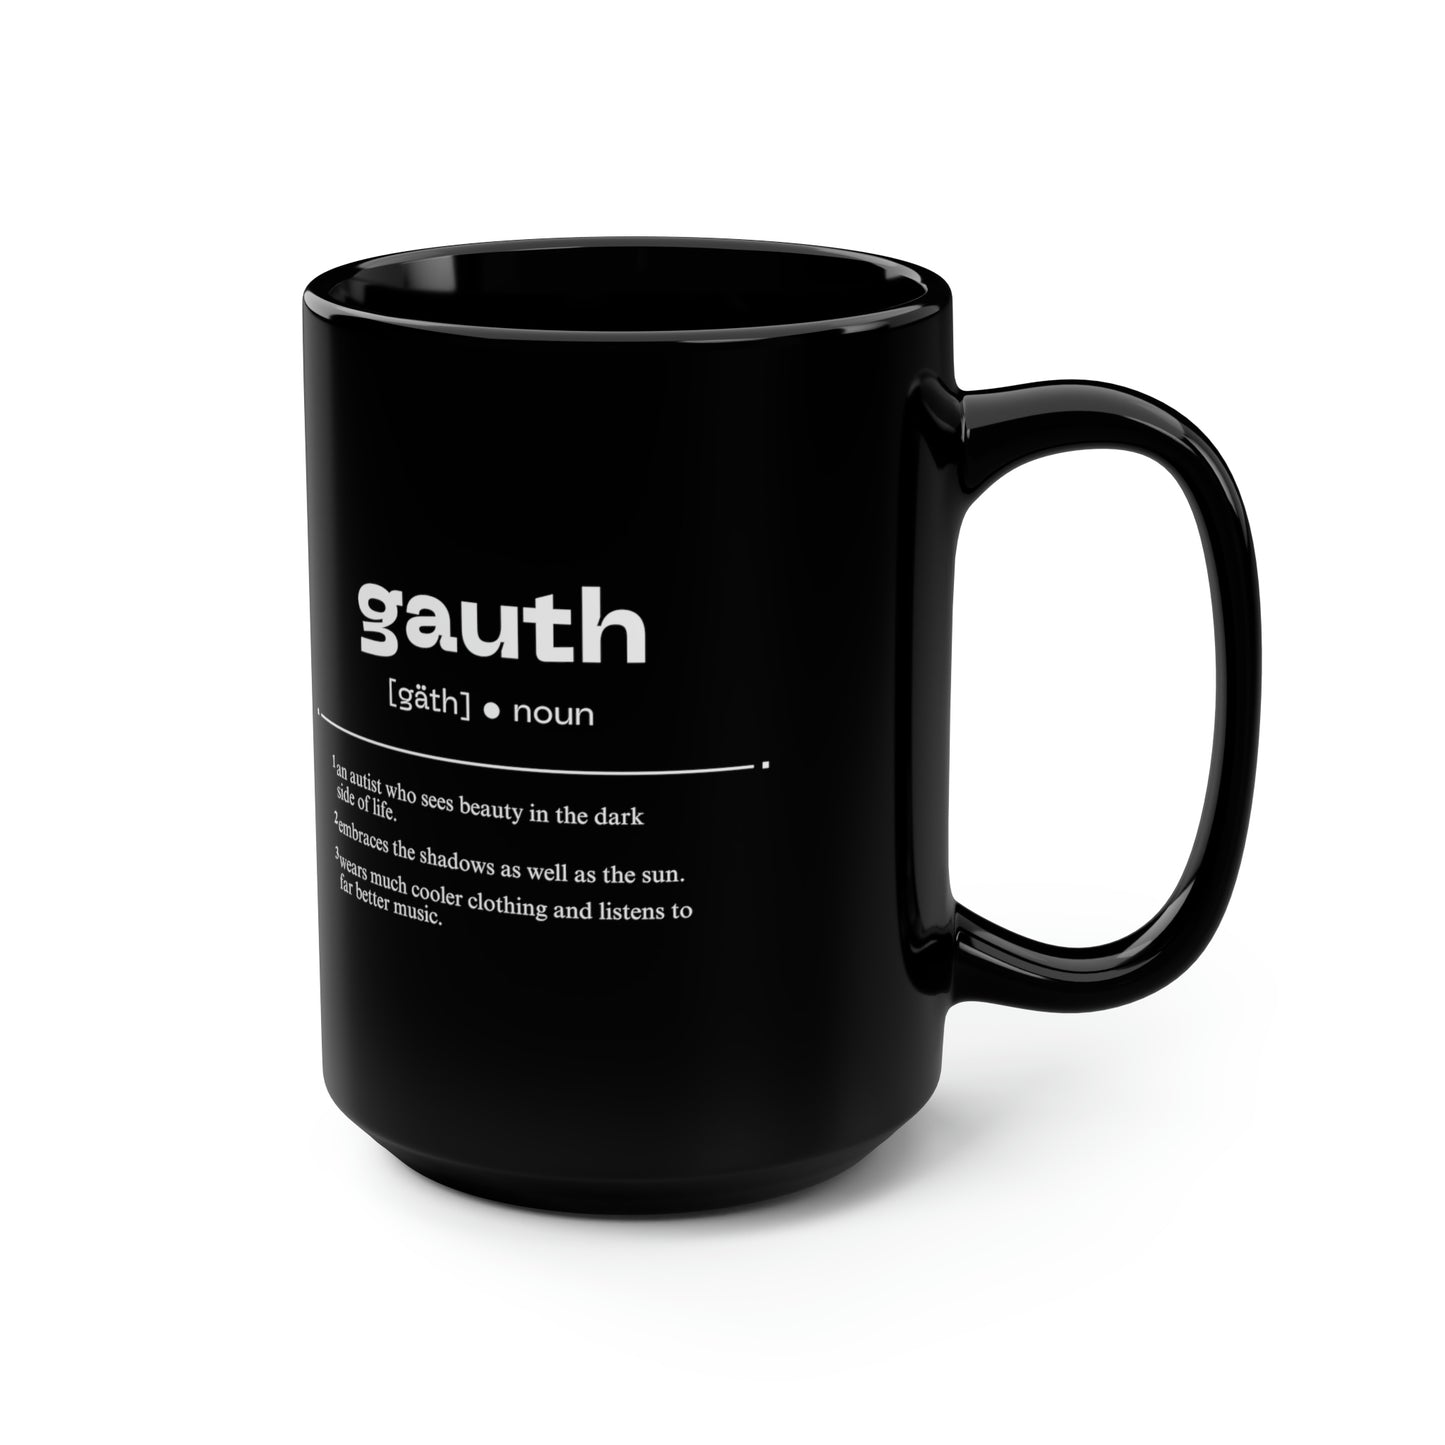 Goth Redefined Inverted [Gauthism Line] Ceramic Mug 15oz